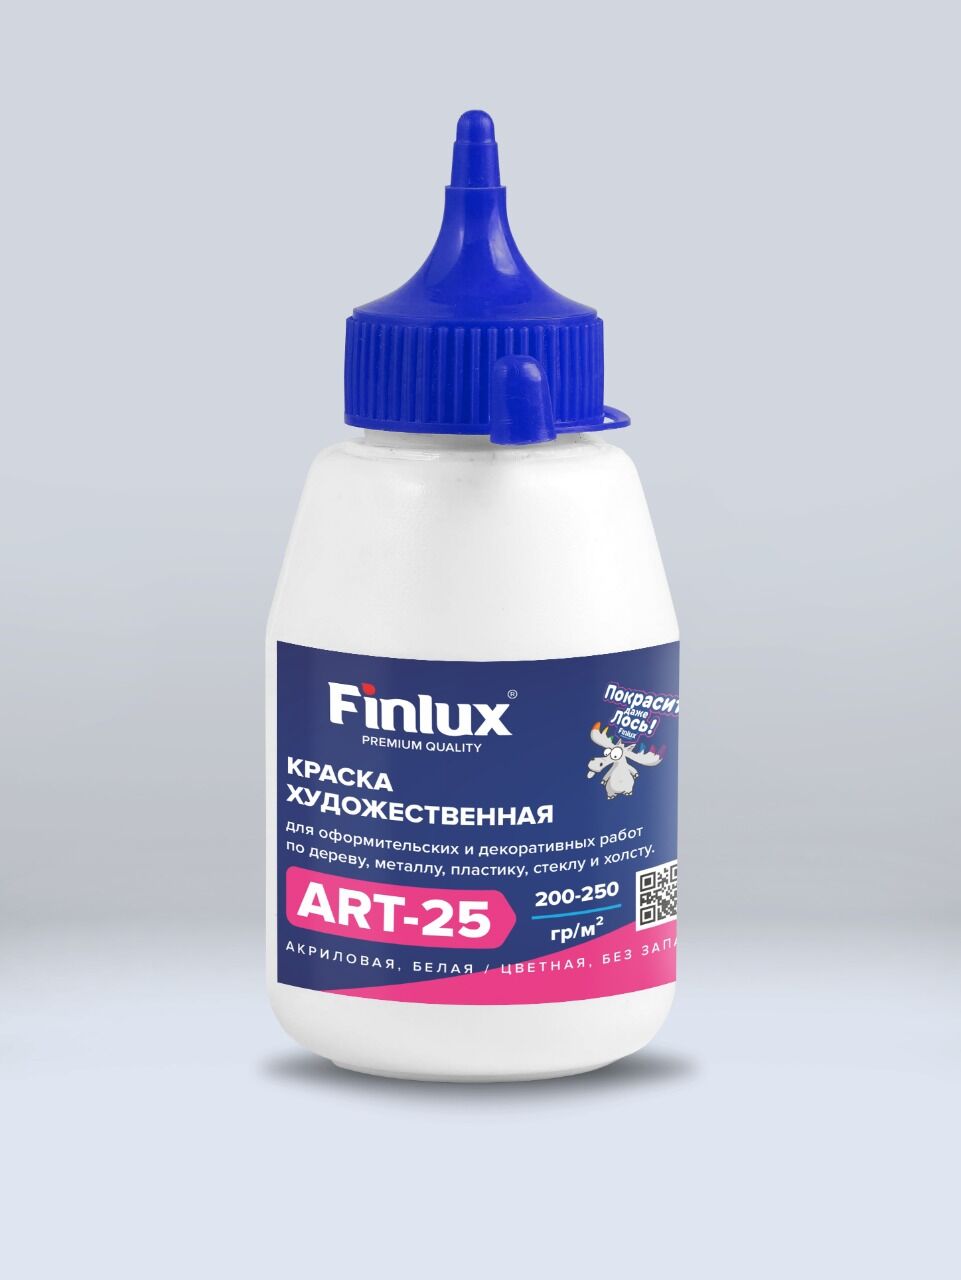 Акриловая краска художественная для рисования Синий, 0,3 кг Finlux ART 25 –матовая